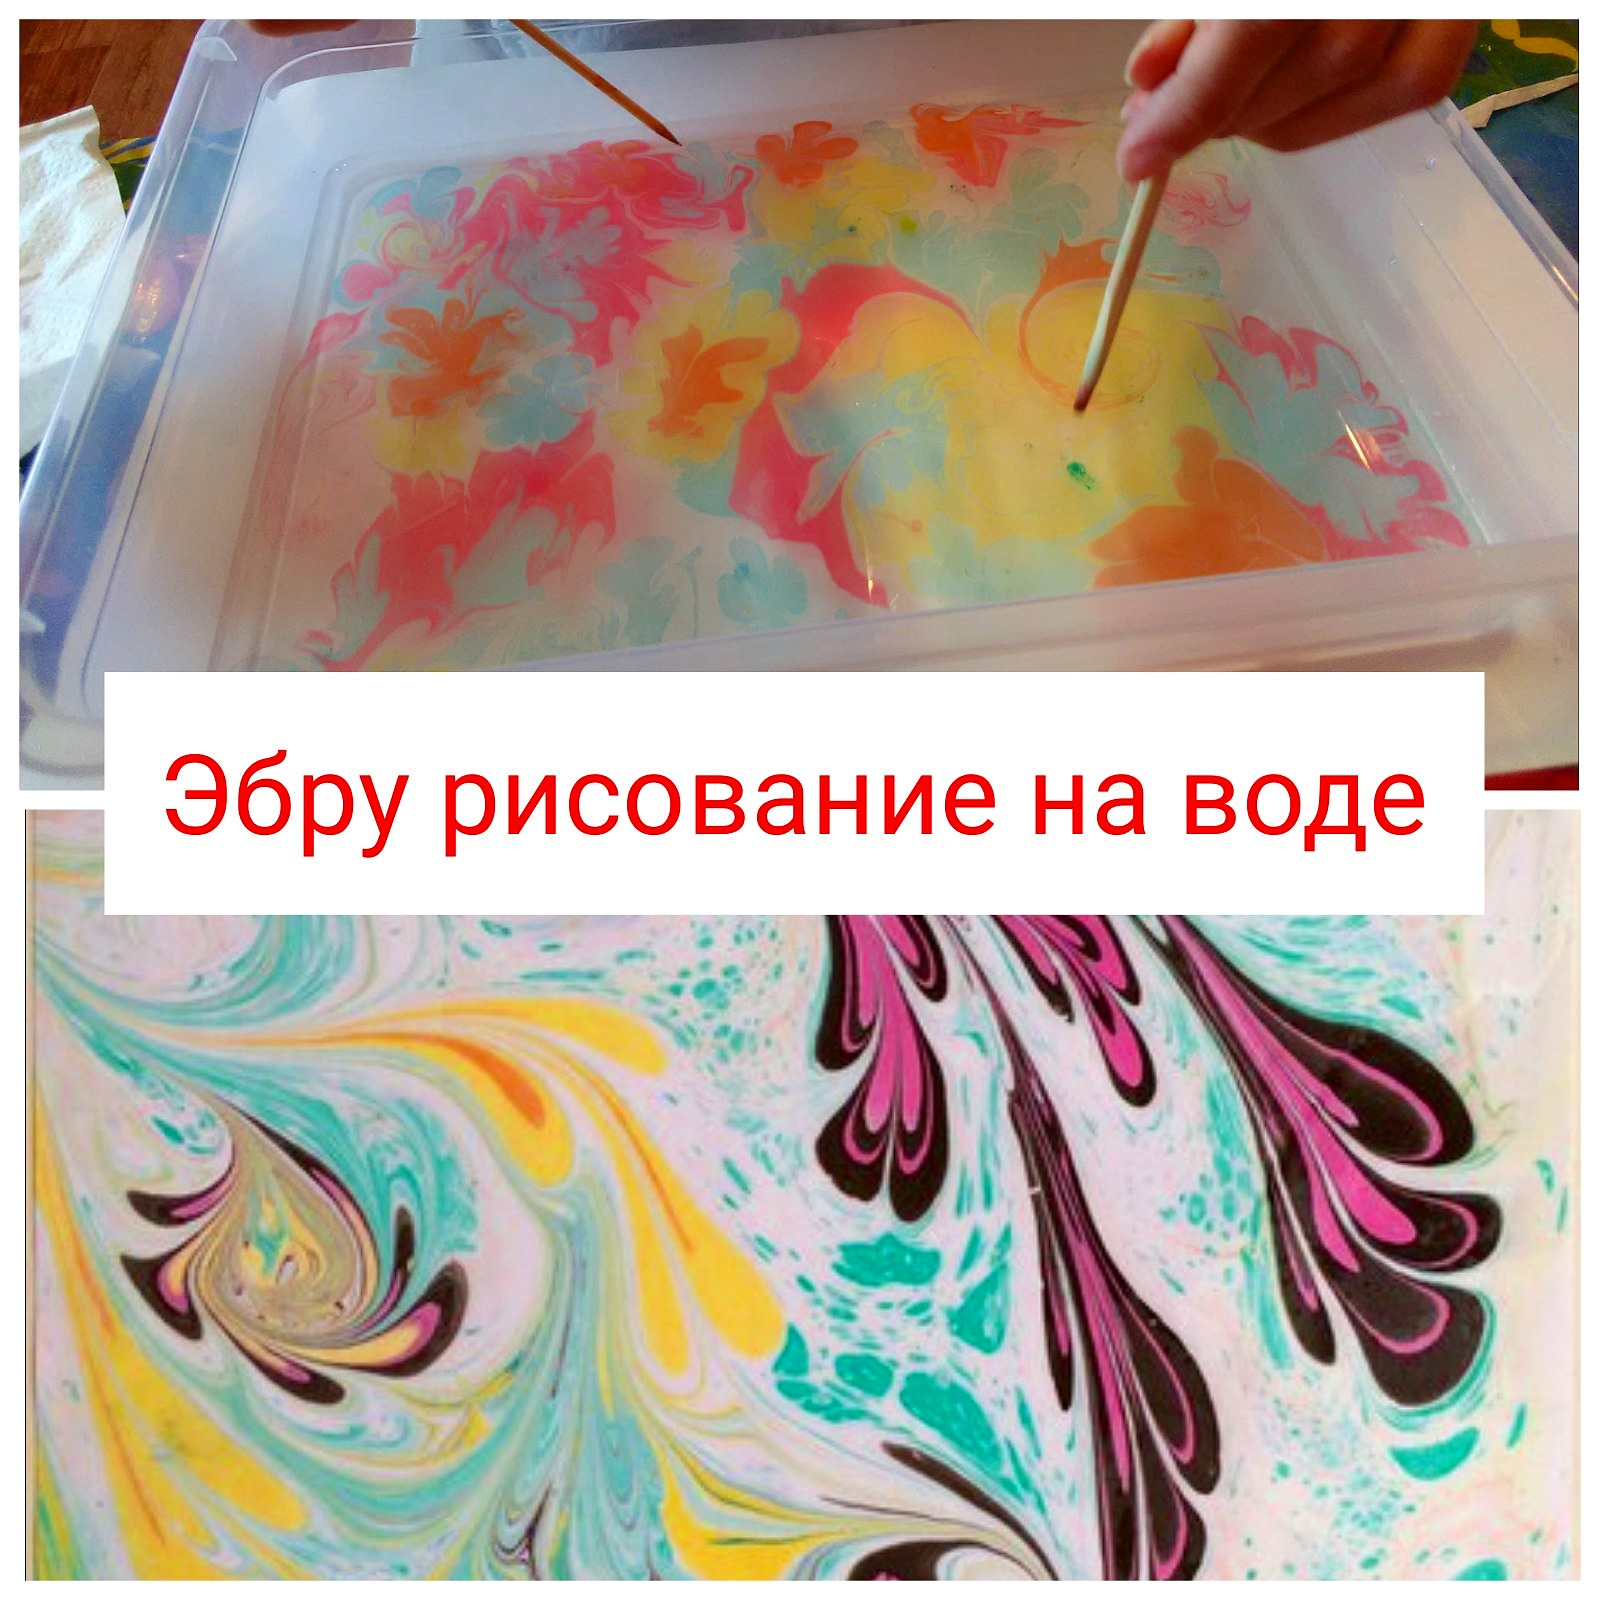 Рисование красками по воде